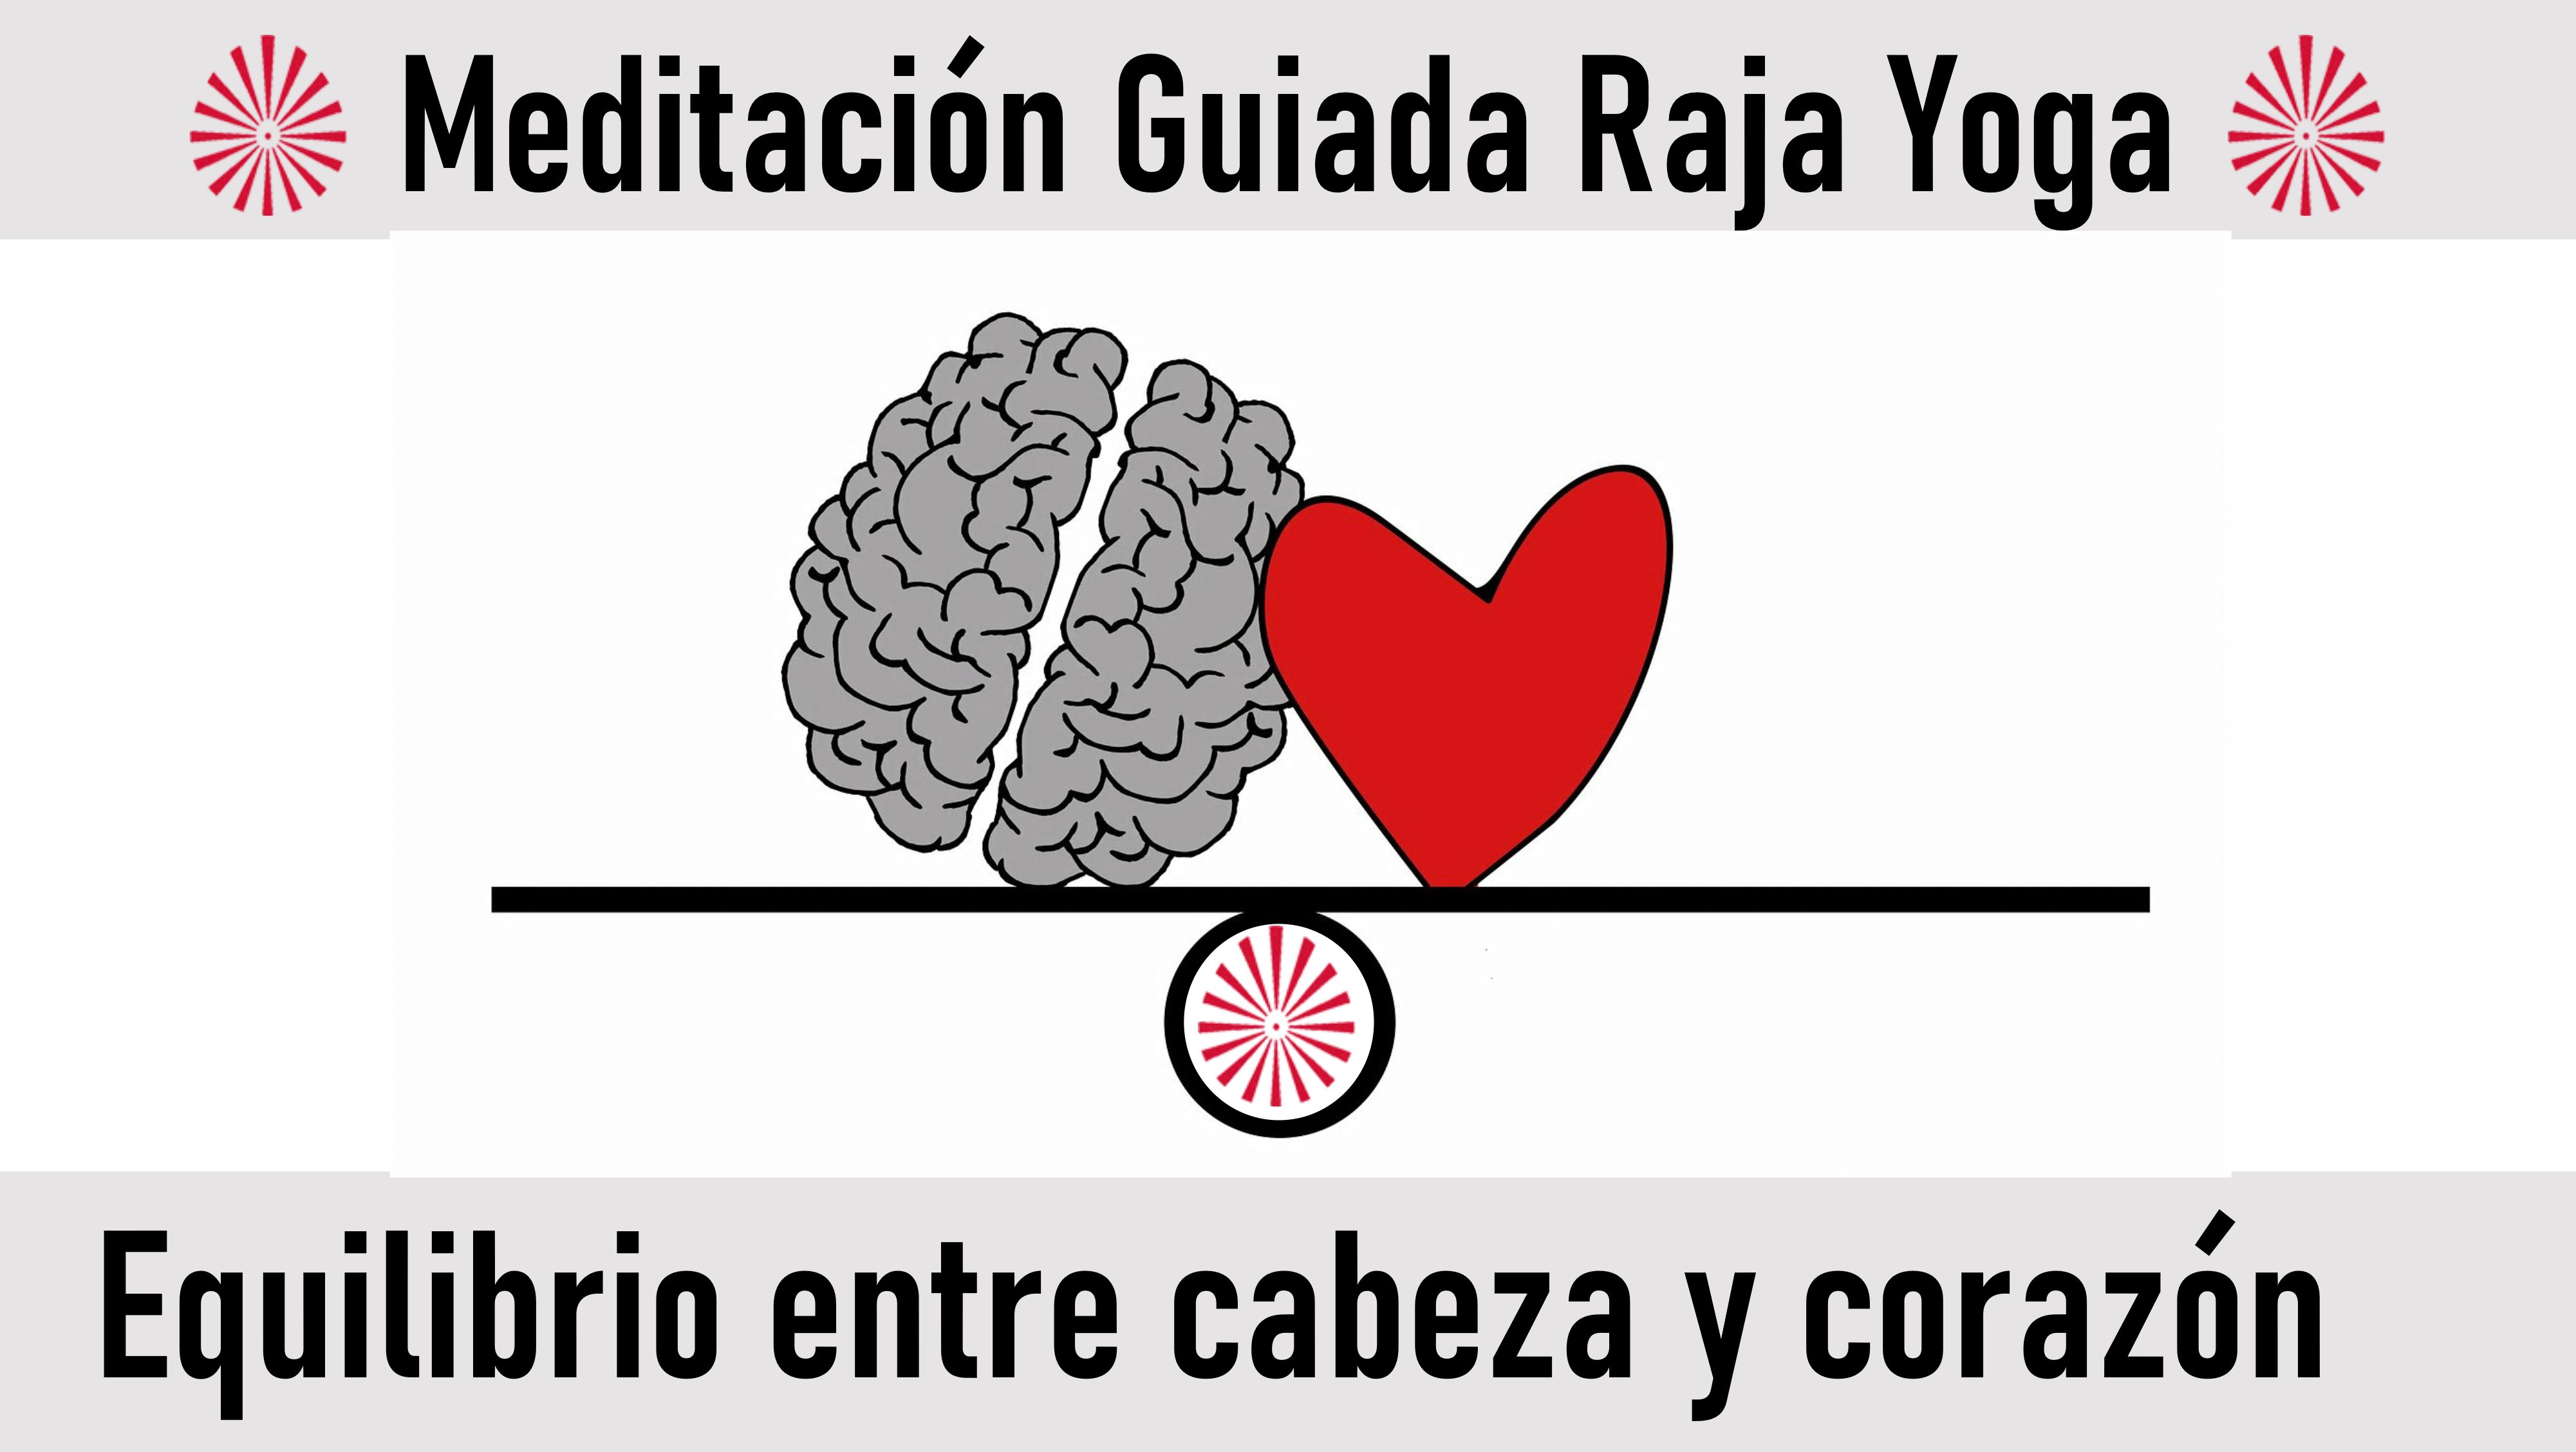 Meditación Raja Yoga: Equilibrio entre cabeza y corazón (27 Julio 2020) On-line desde Madrid